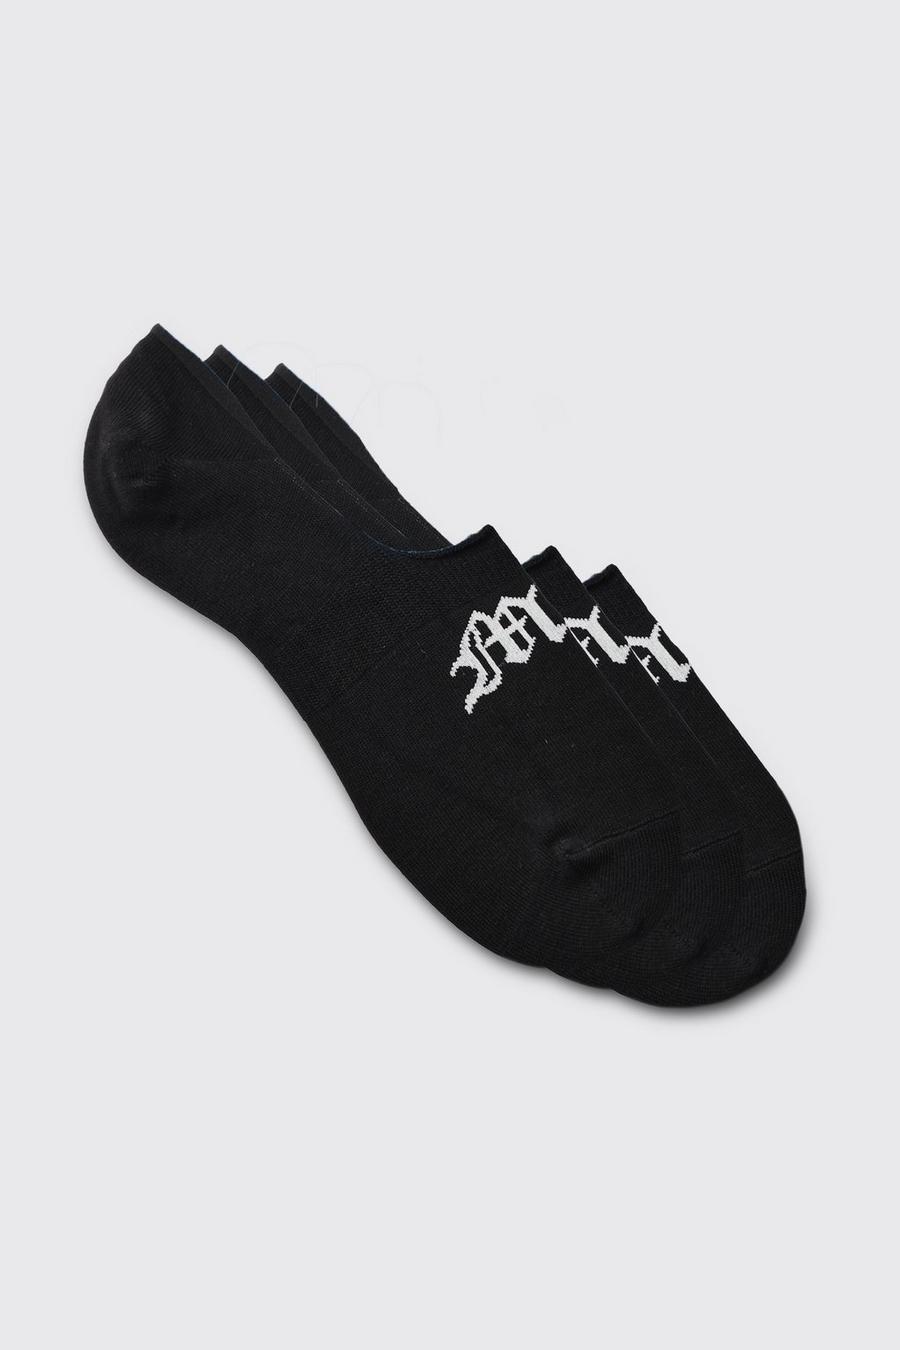 Pack de 3 pares de calcetines invisibles con letras MAN góticas, Black